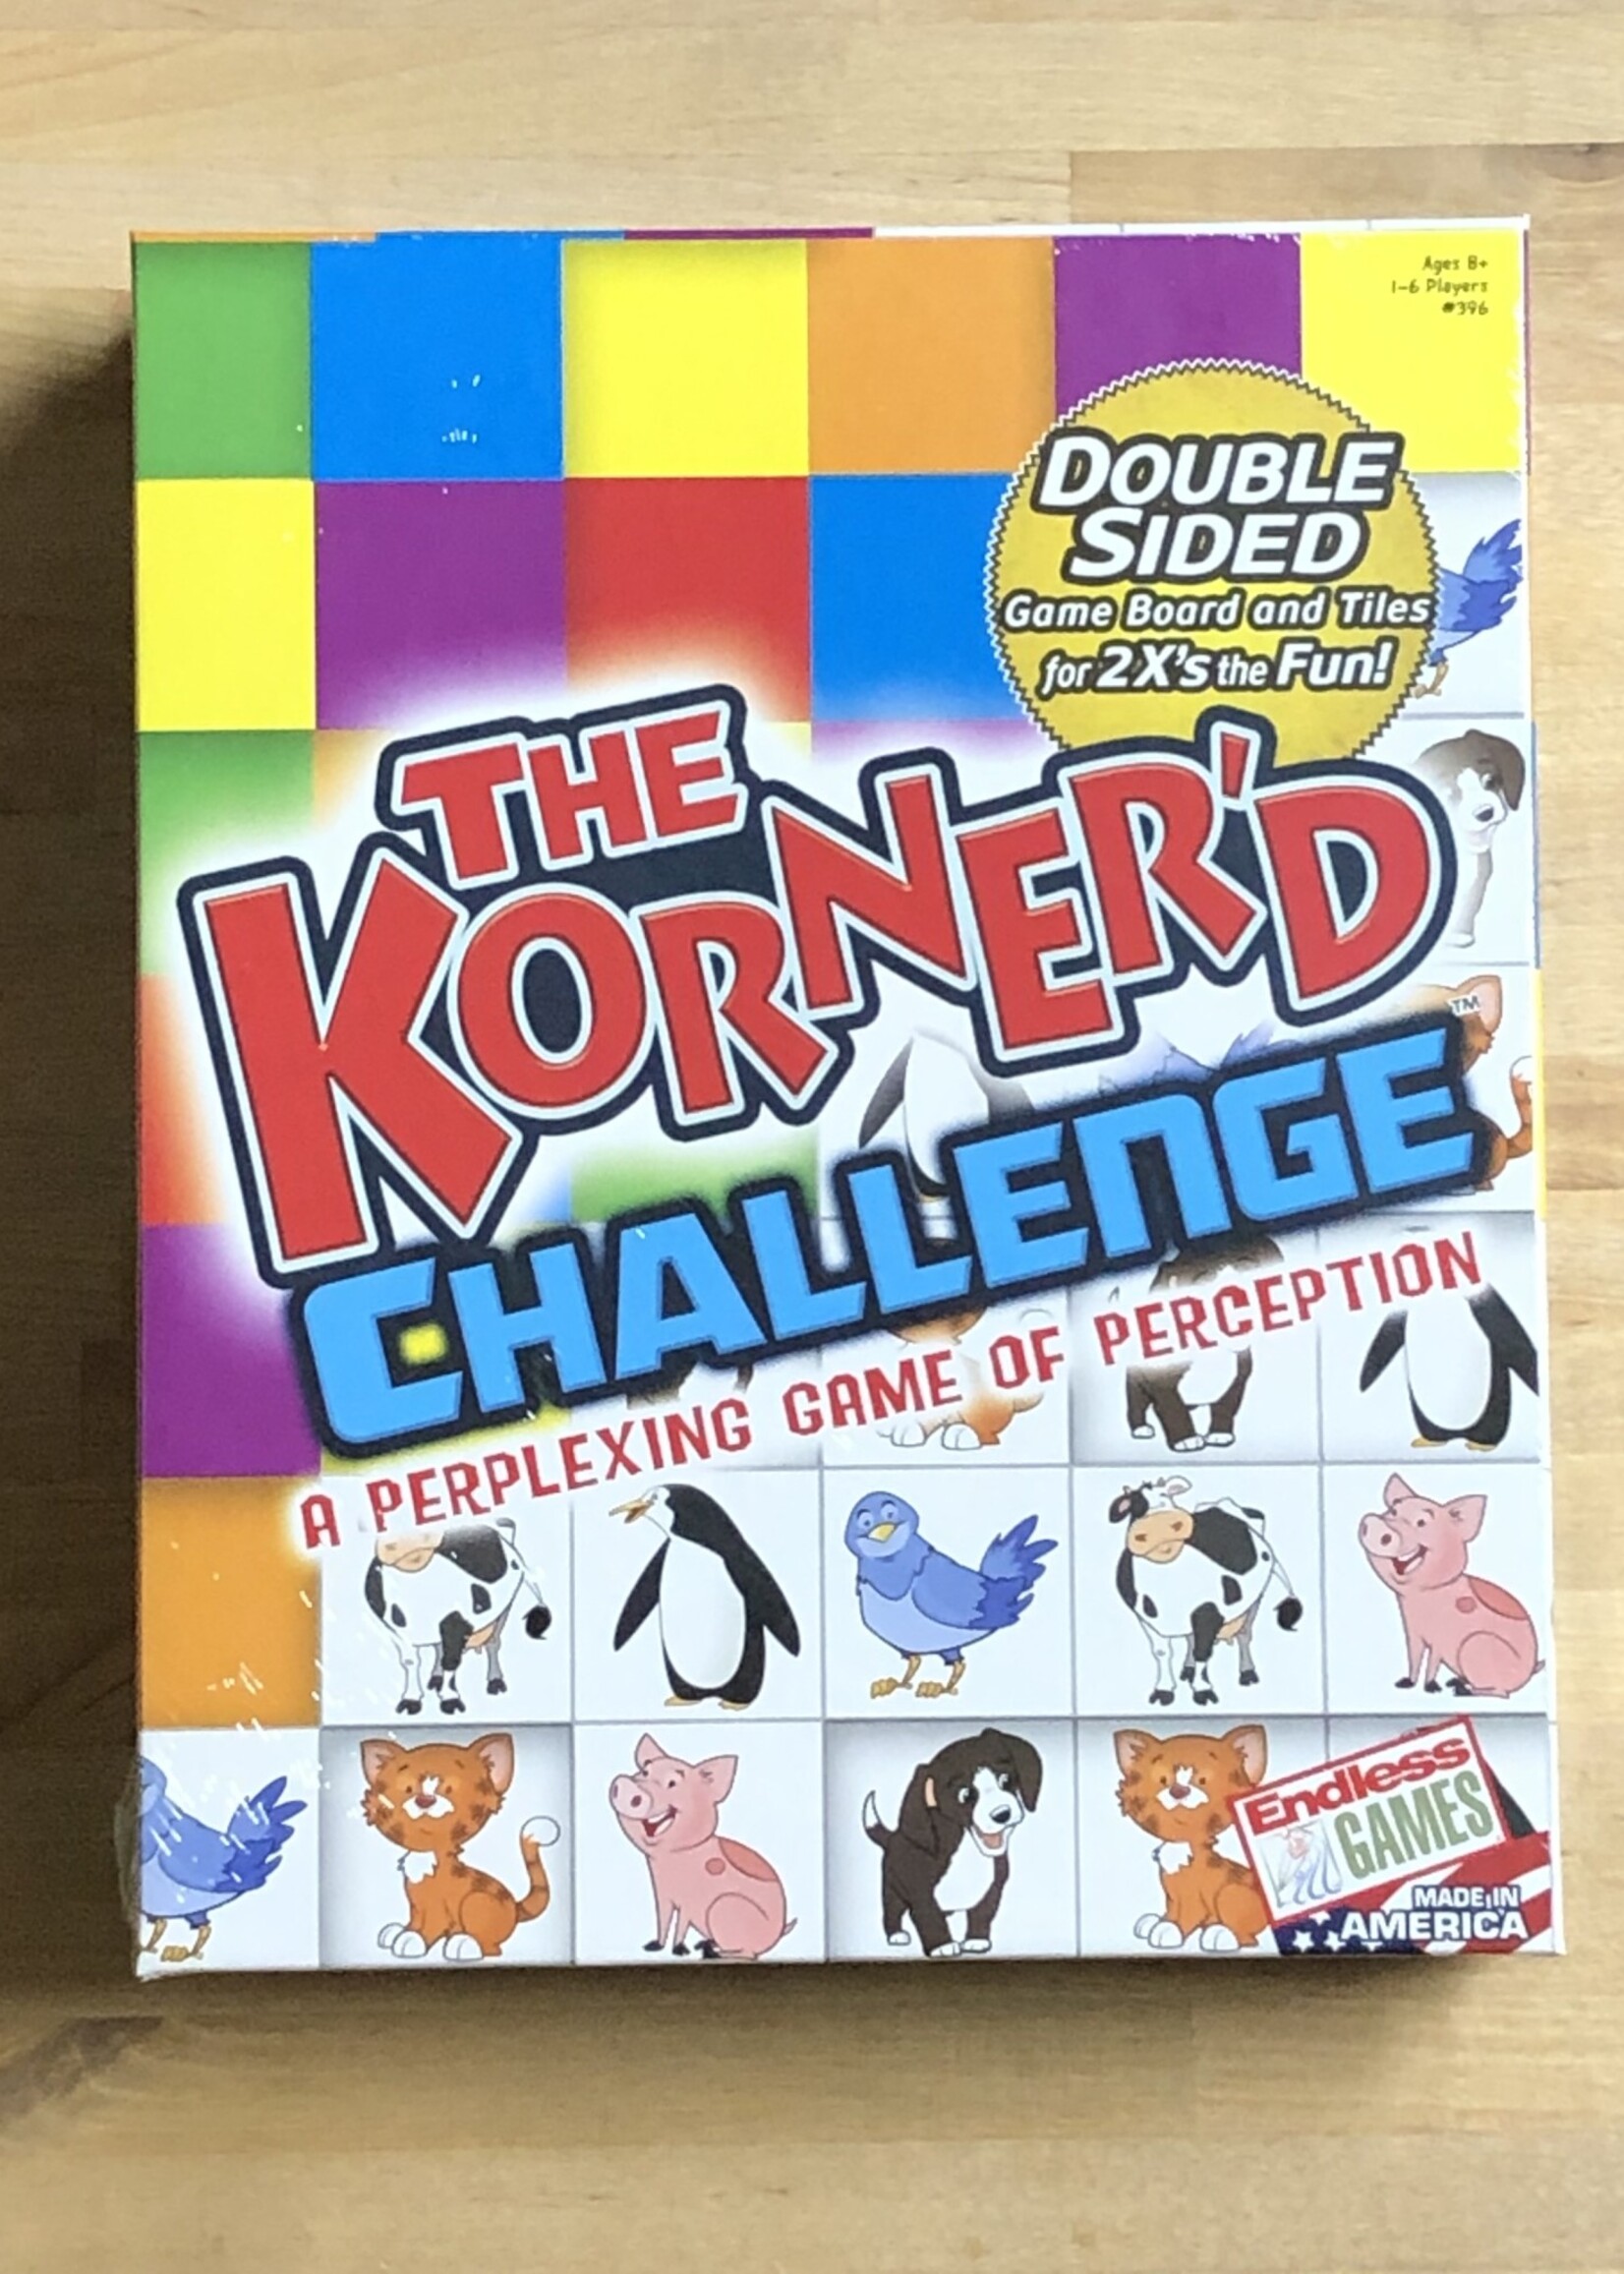 Game - The Korner’d Challenge